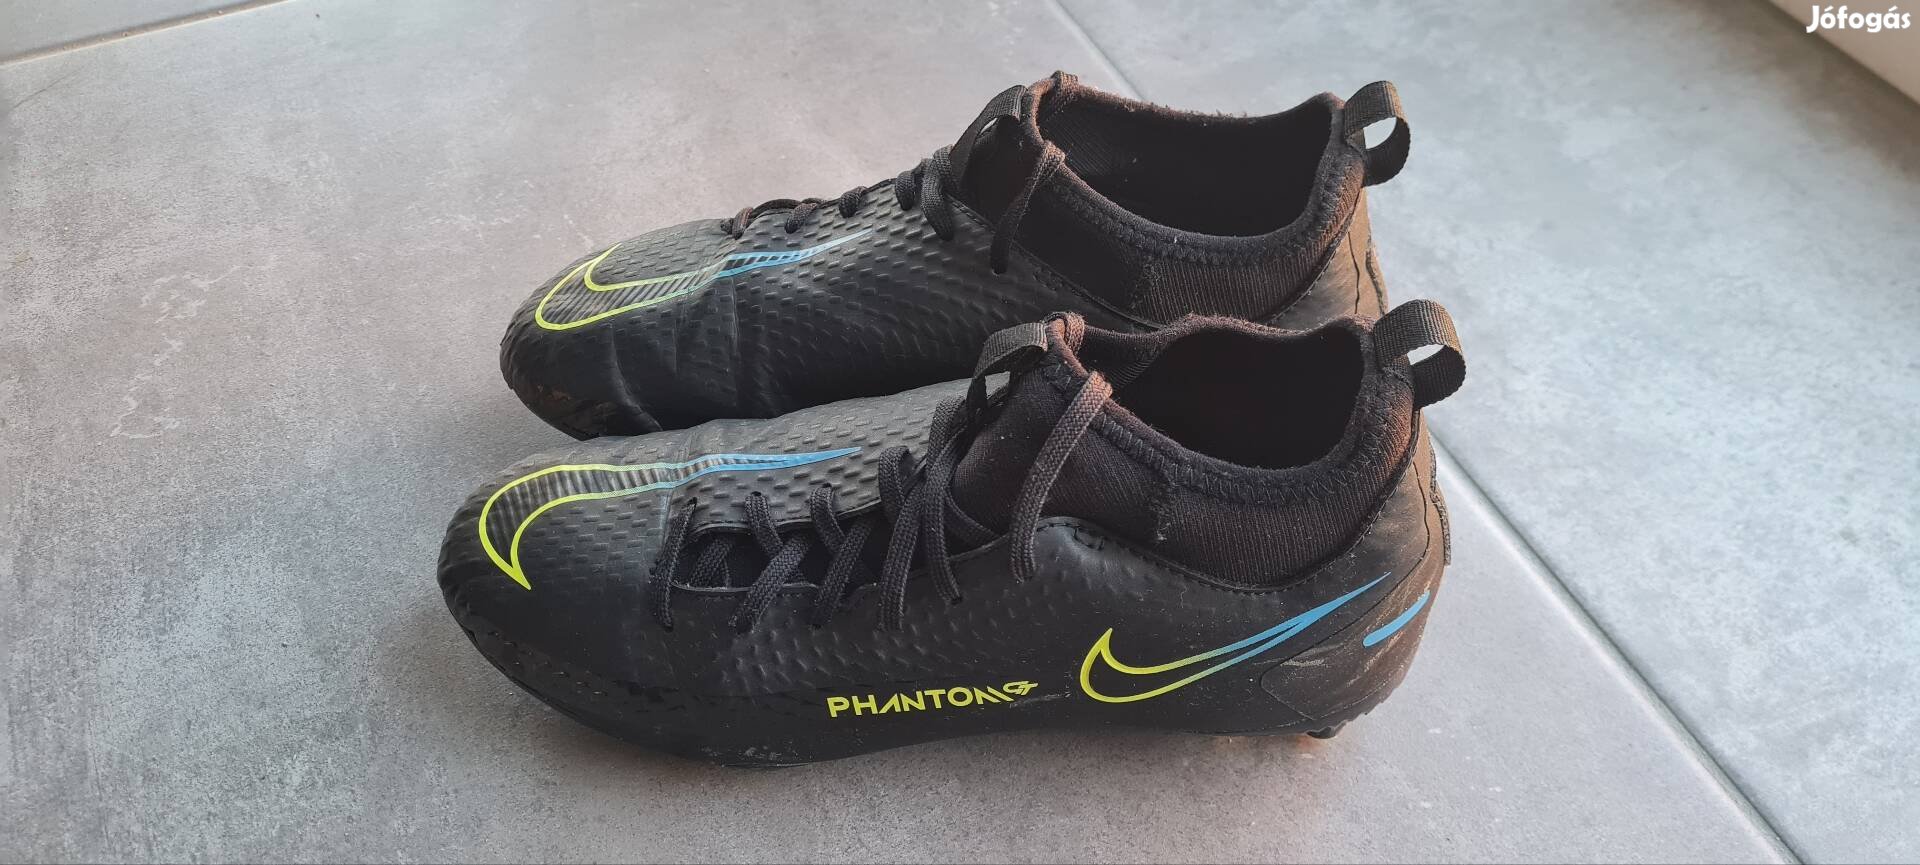 36,5-es nagyon használt Nike Phantom stoplis cipő